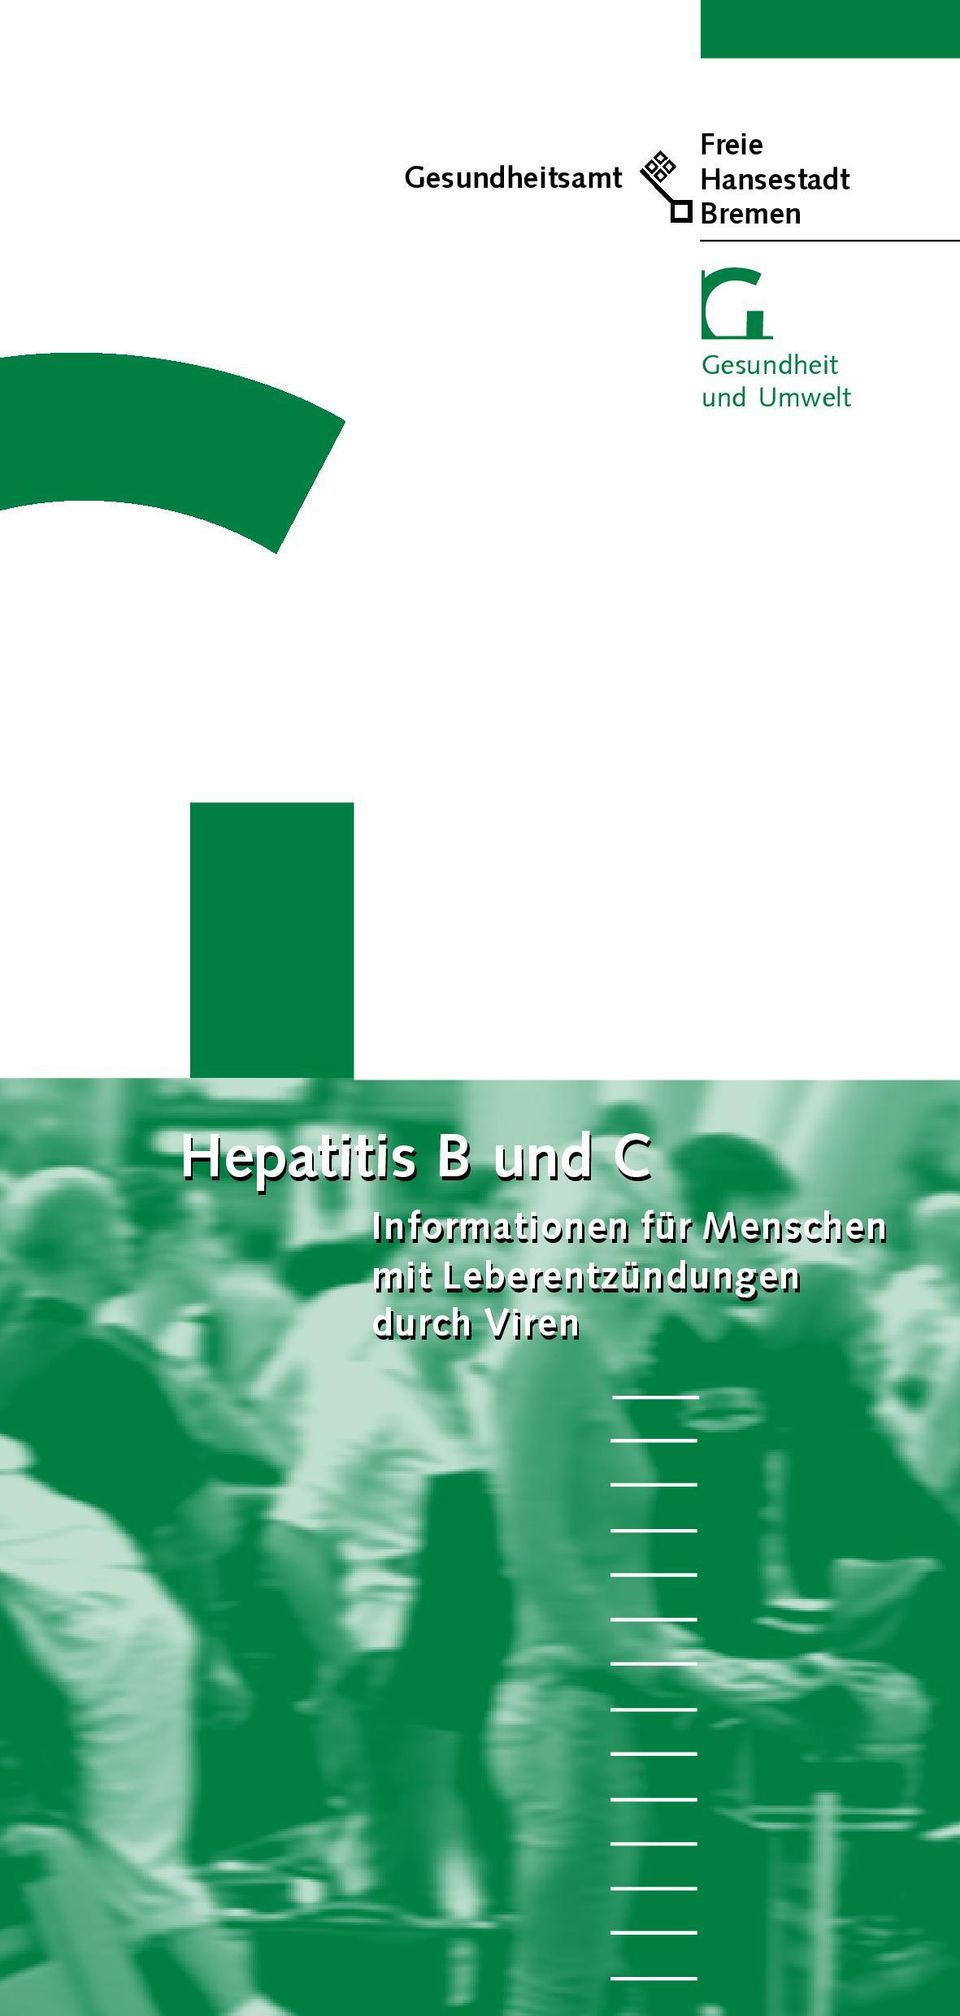 Hepatitis B und C Informationen